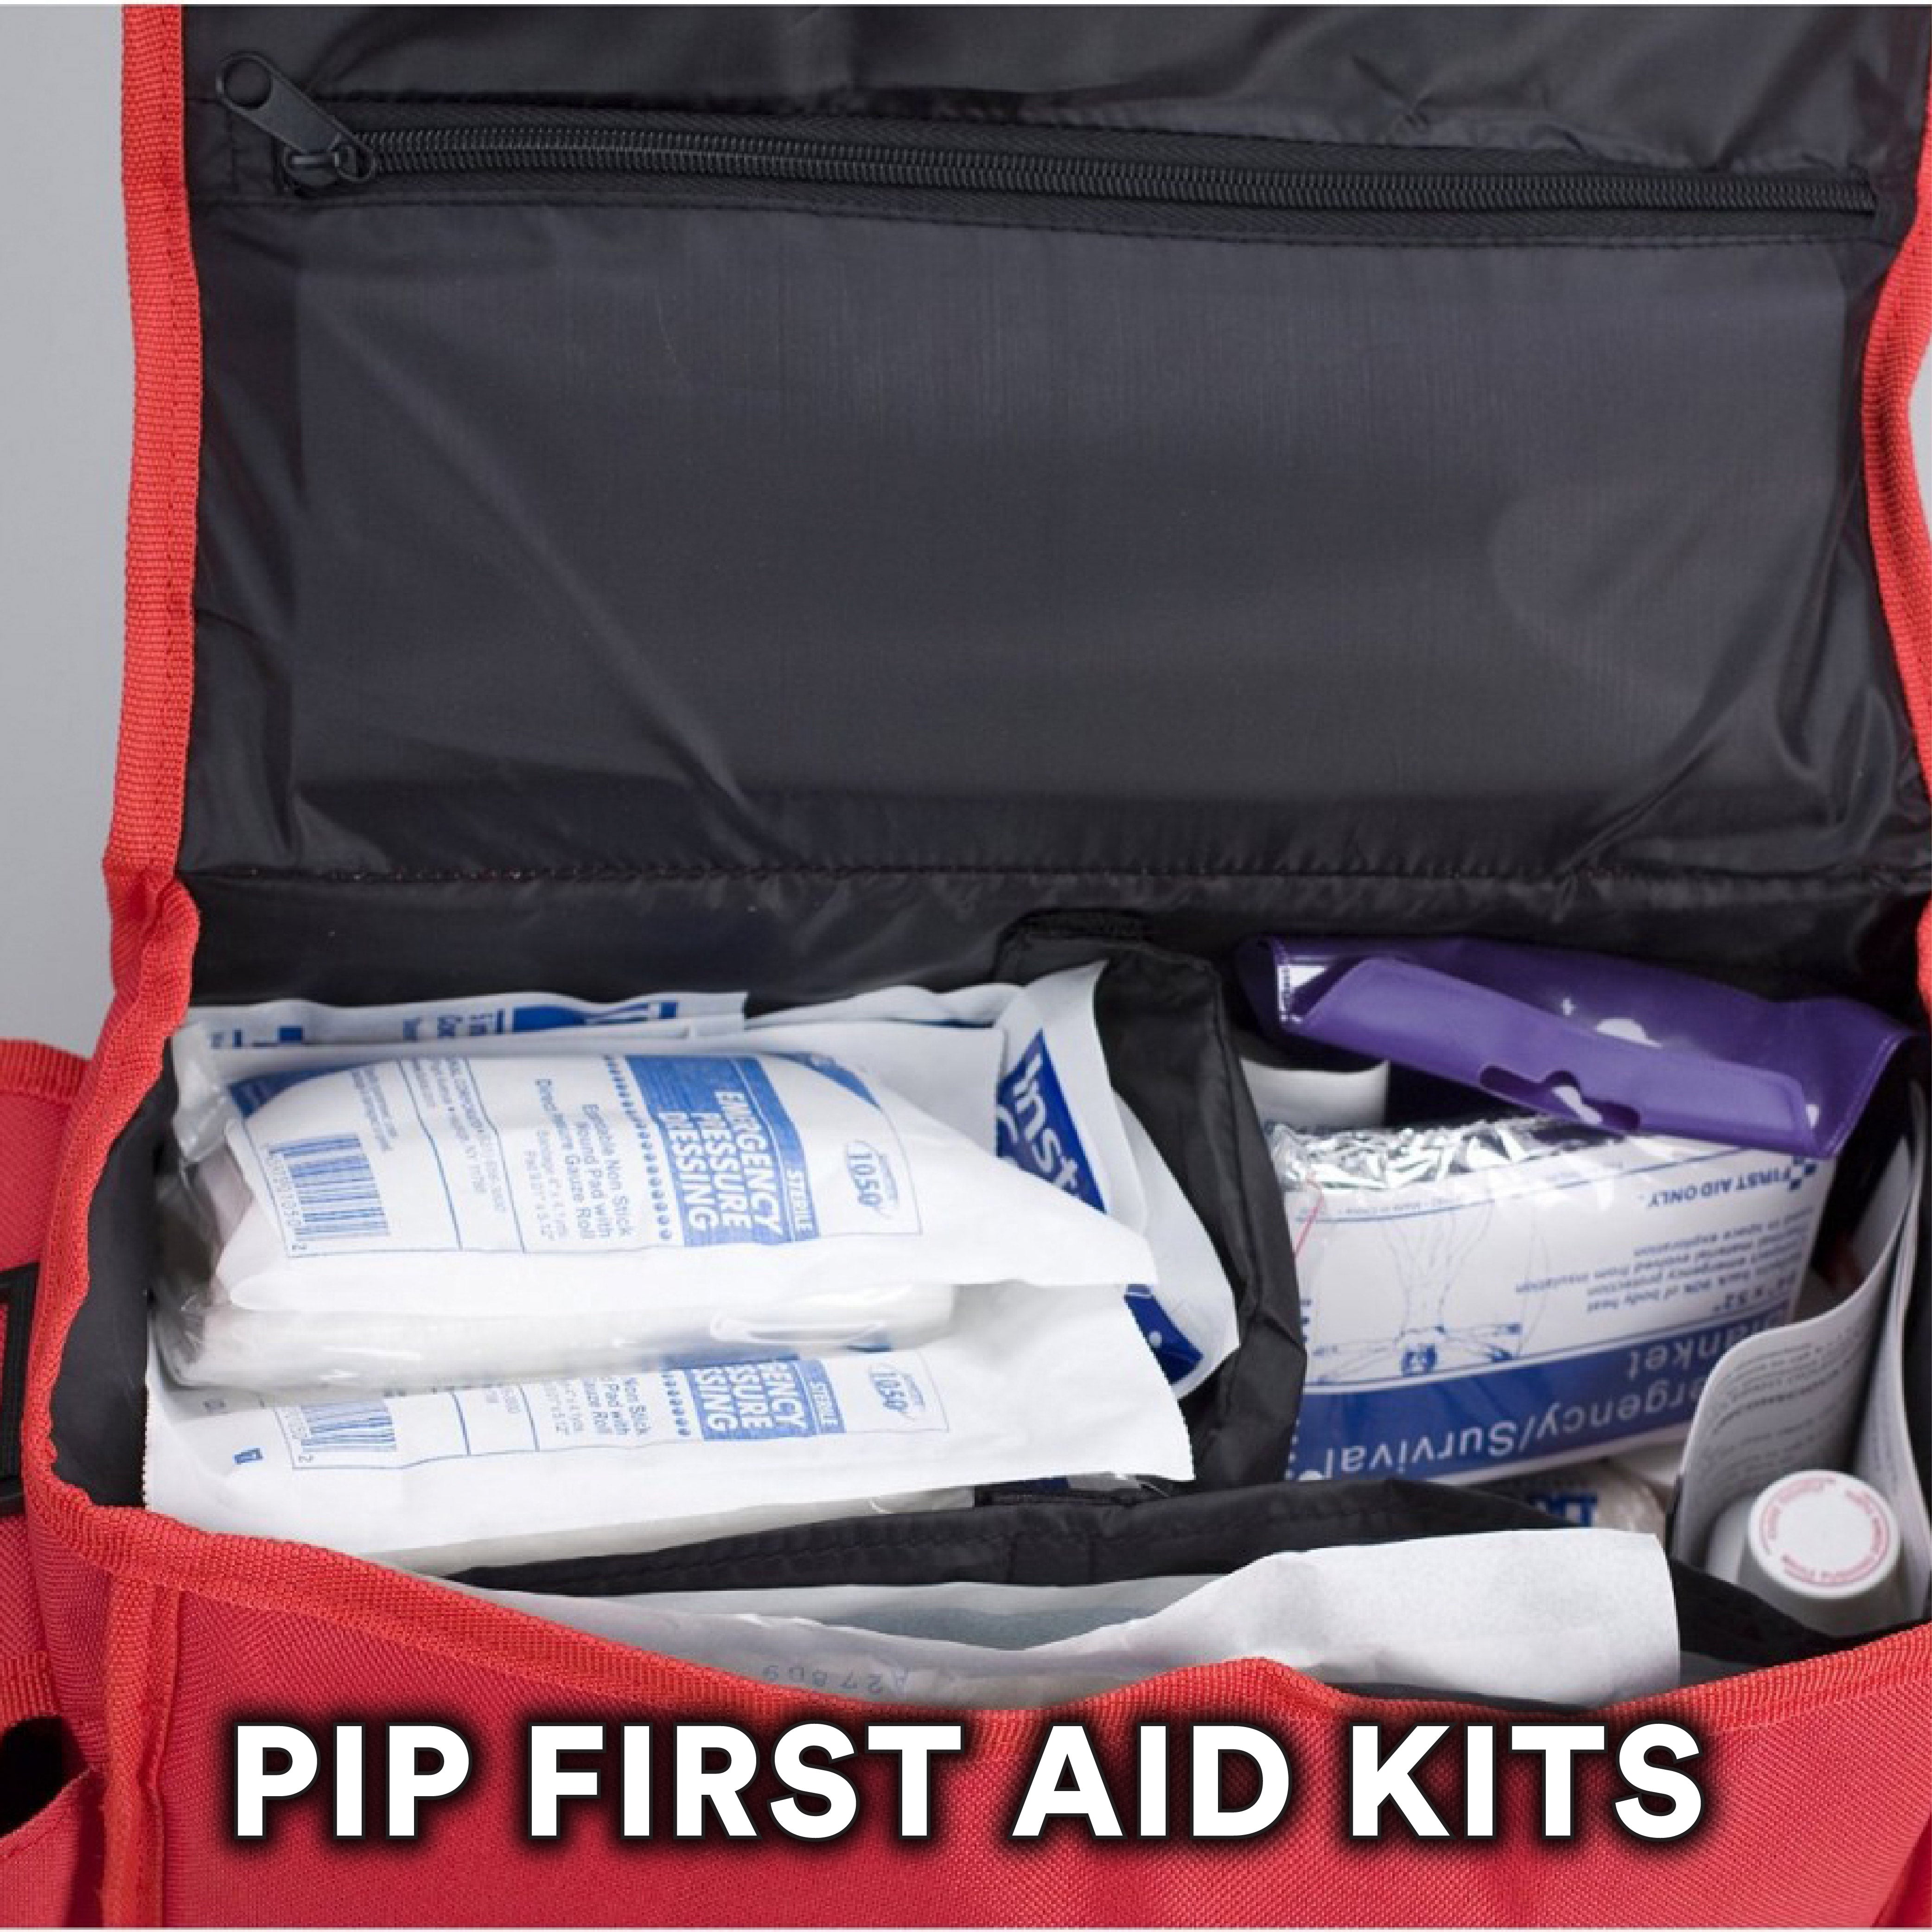 PIP First Aid Kits